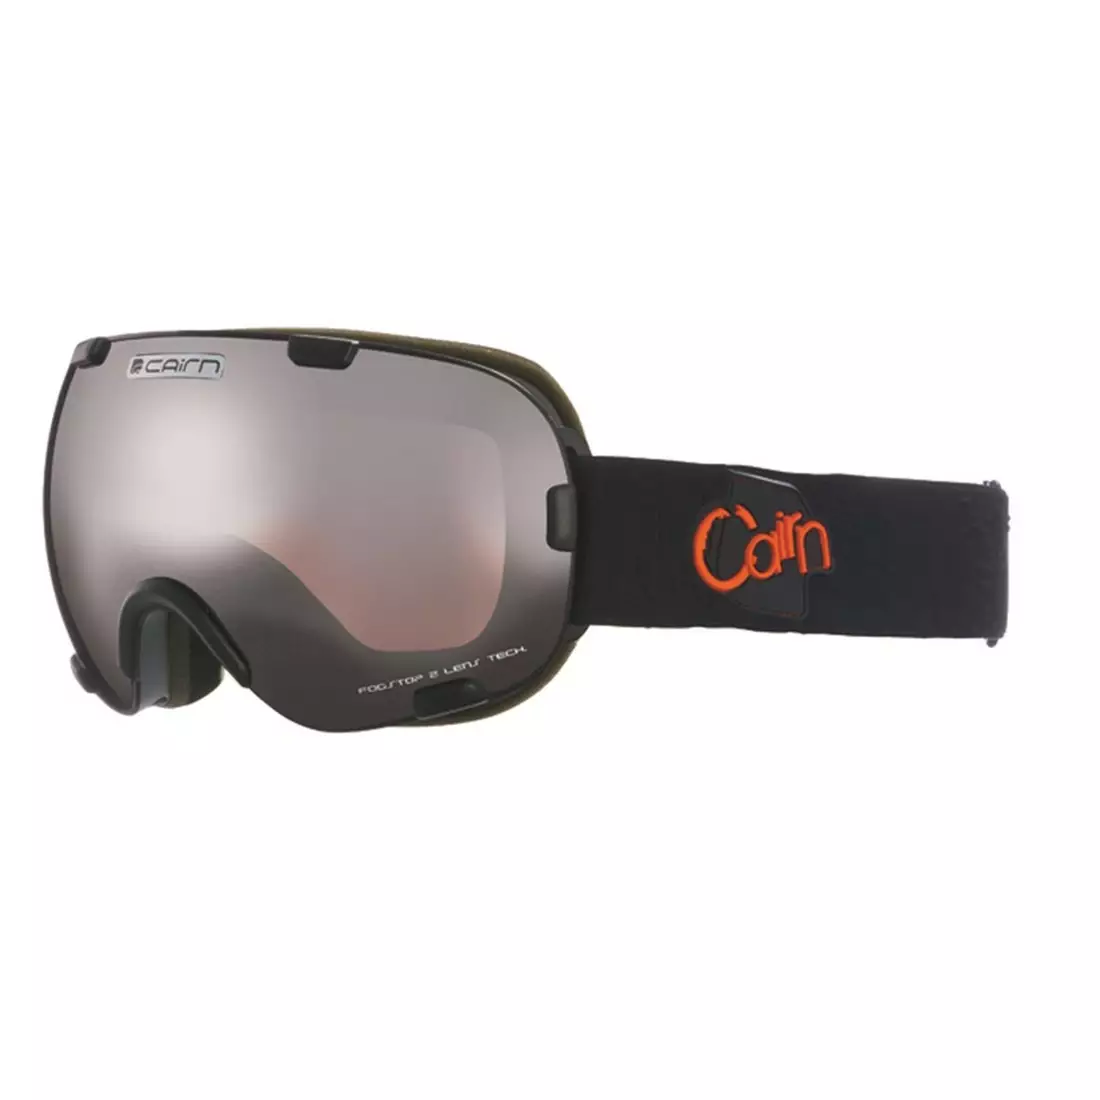 CAIRN sí- és snowboard szemüveg SPIRIT OTG black